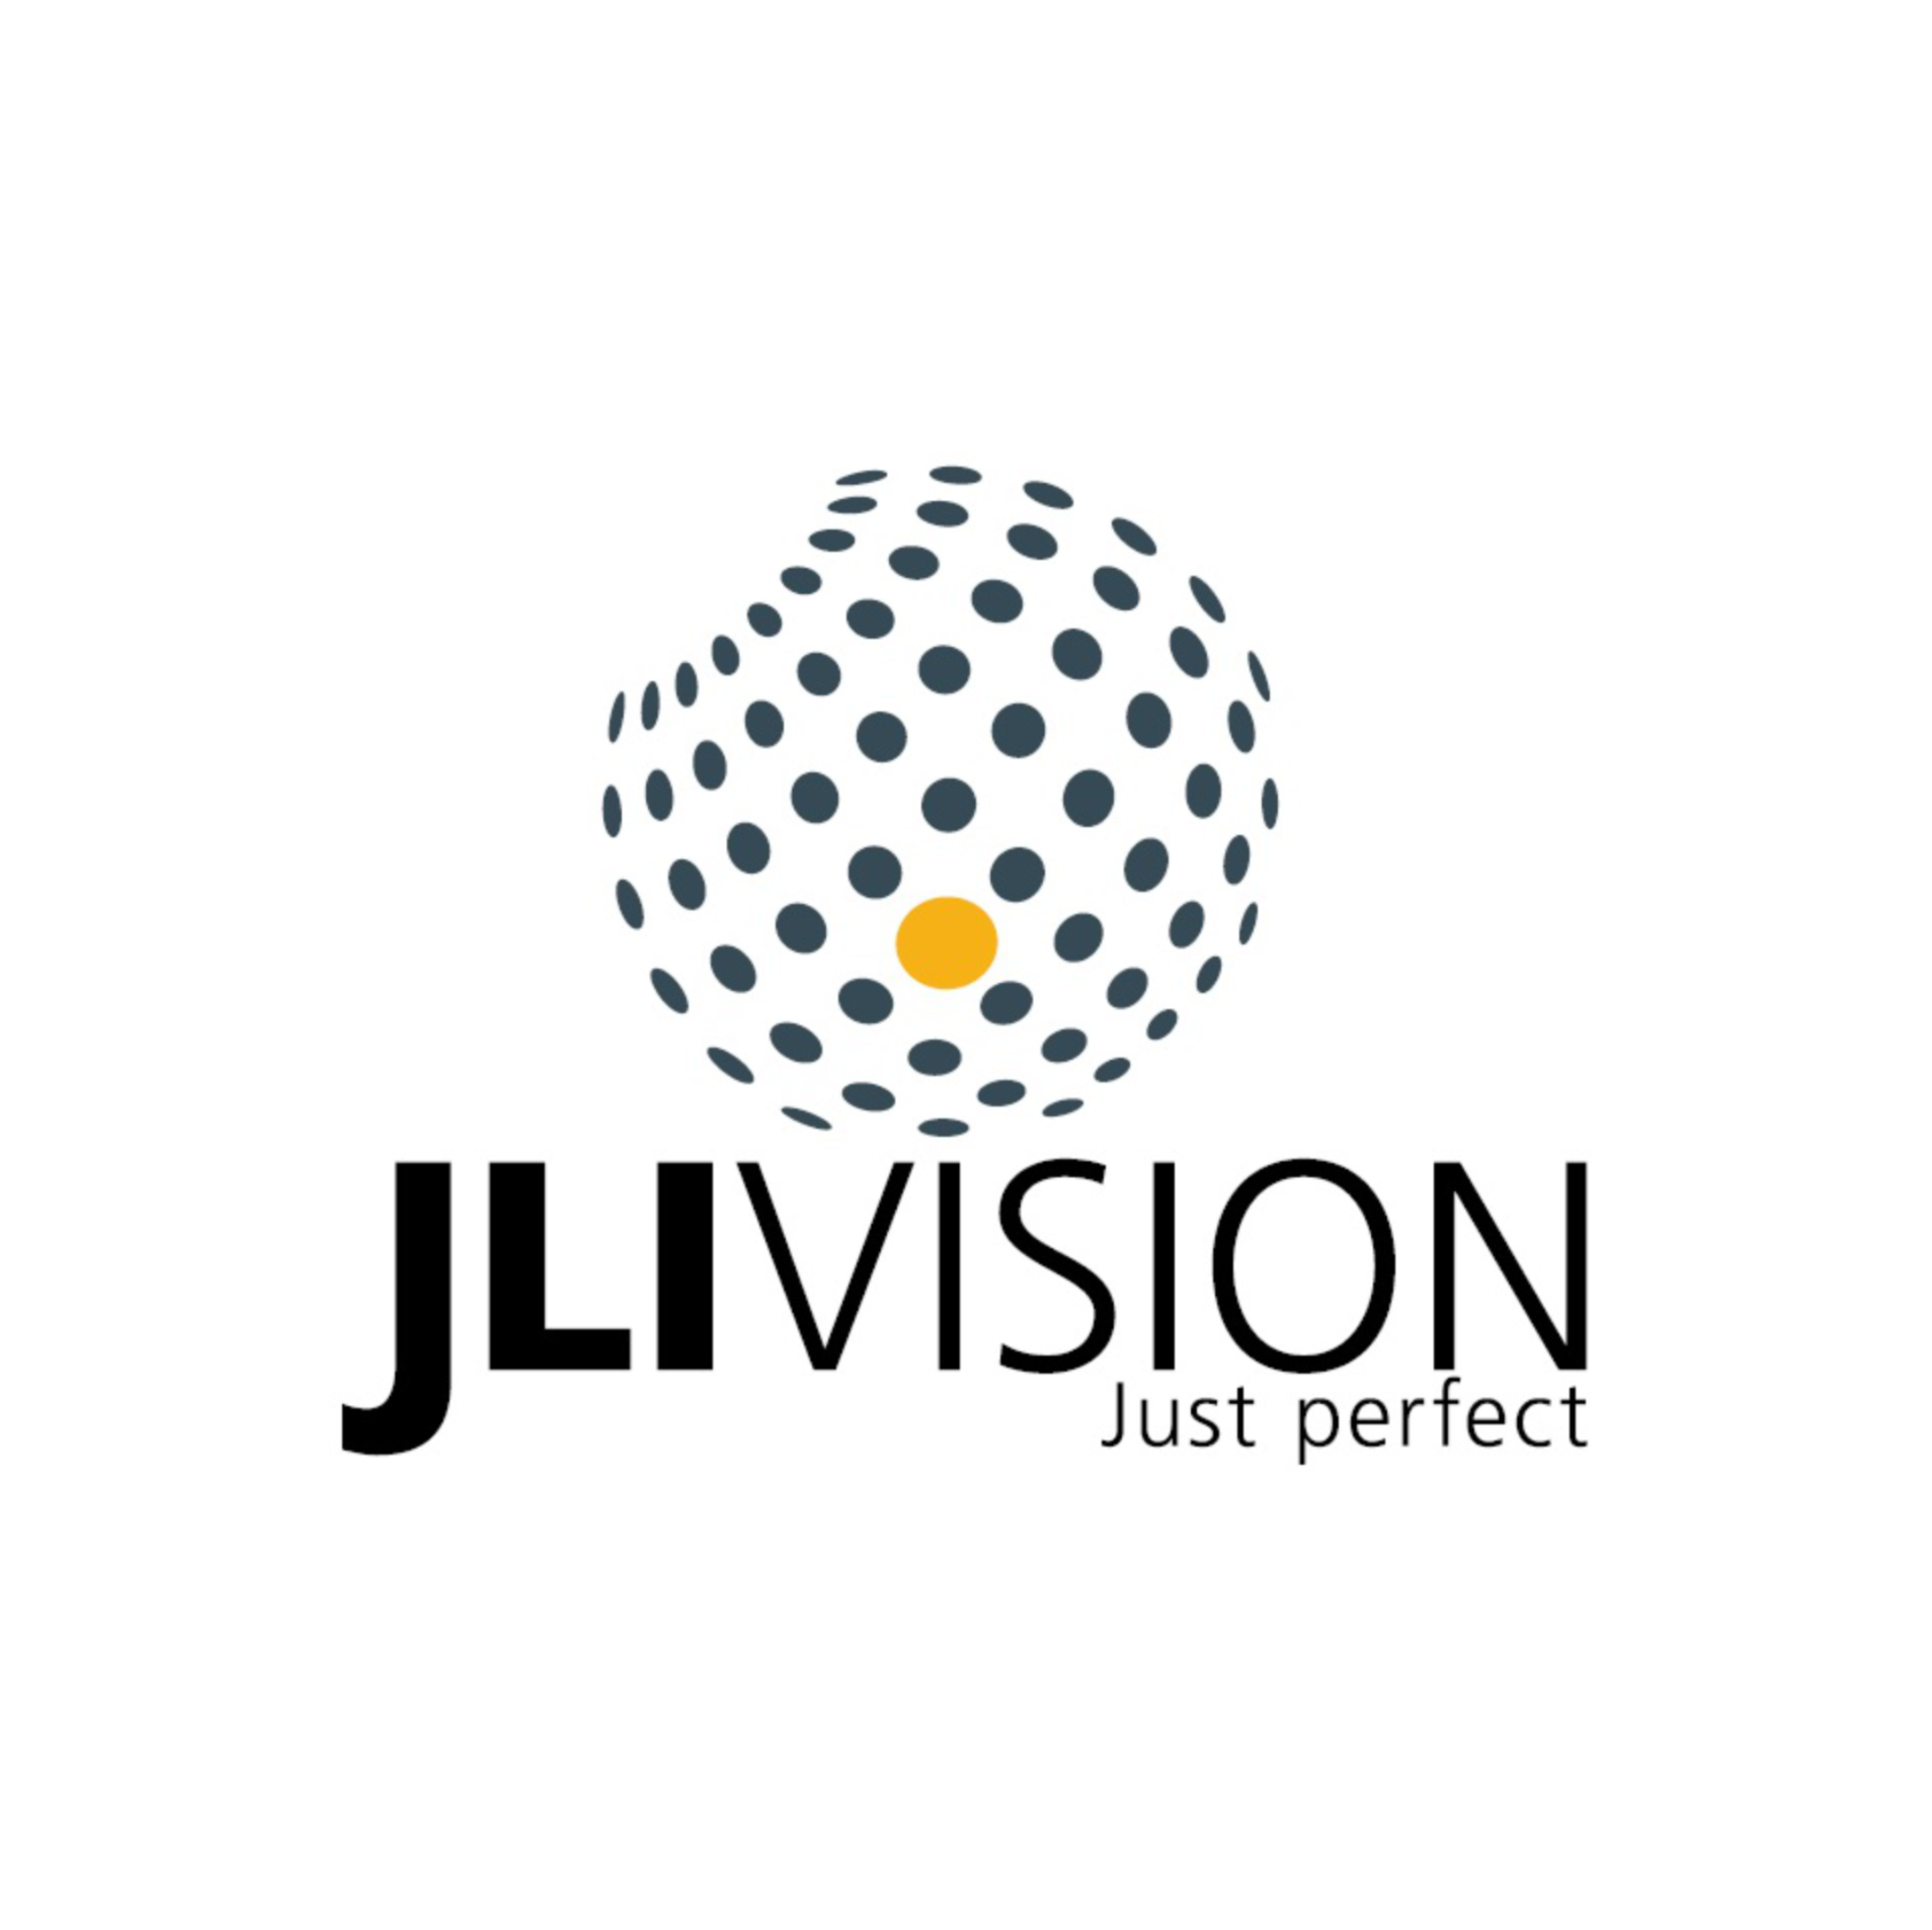 JLI Vision Logo